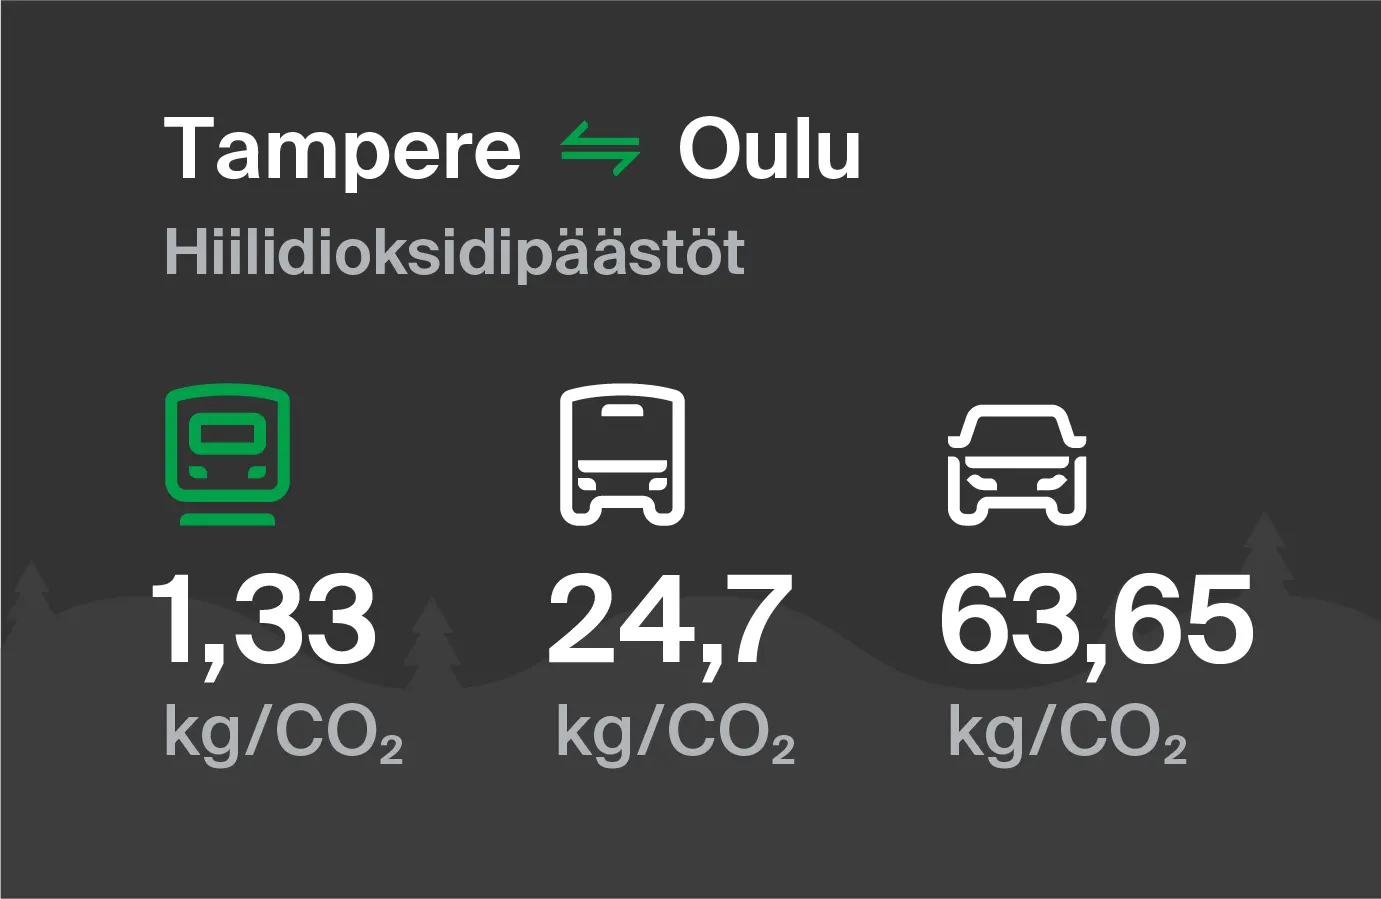 Hiilidioksidipäästöt Tampereelta Ouluun eri kulkuvälinemuodoilla: junalla 1,33 kg/CO2, bussilla 24,7 kg/CO2 ja autolla 63,65 kg/CO2.